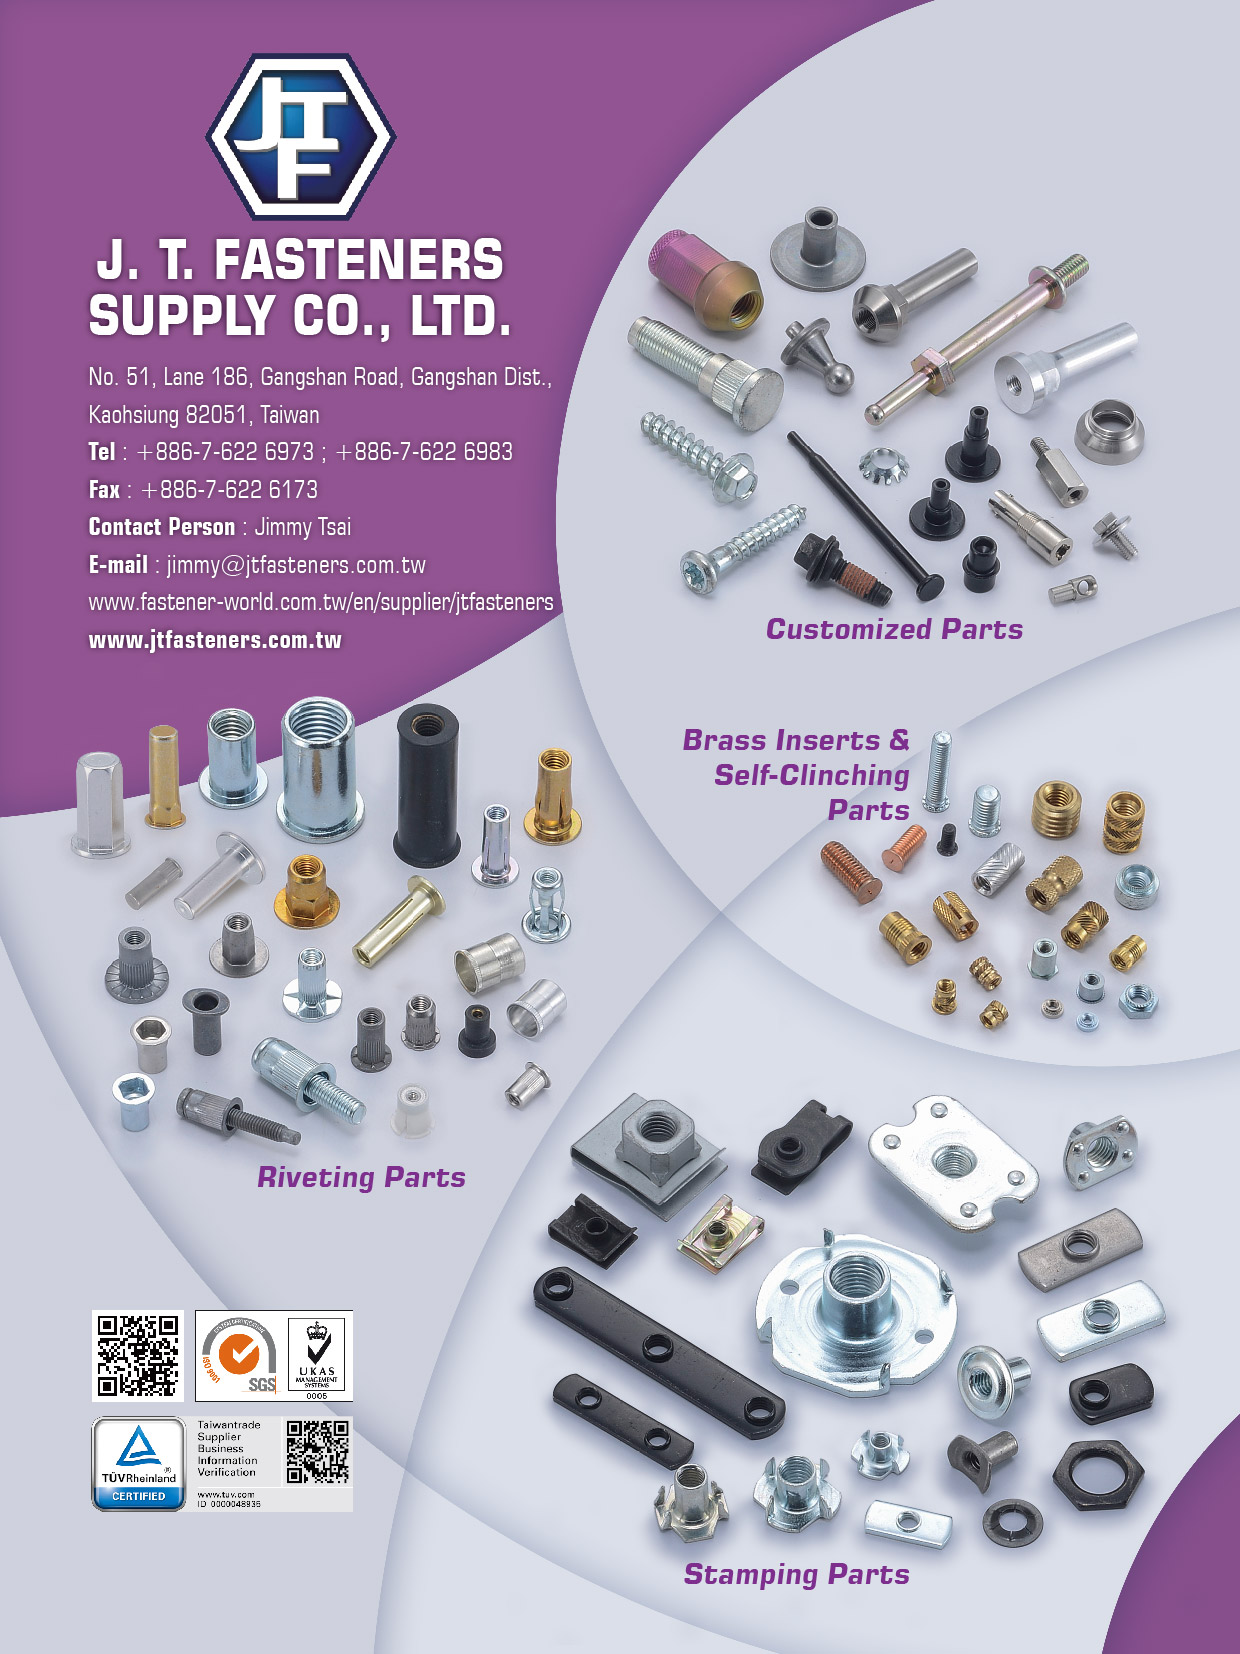 金祐昇實業有限公司 (J. T. Fasteners Supply Co., Ltd.)  電子型錄專區